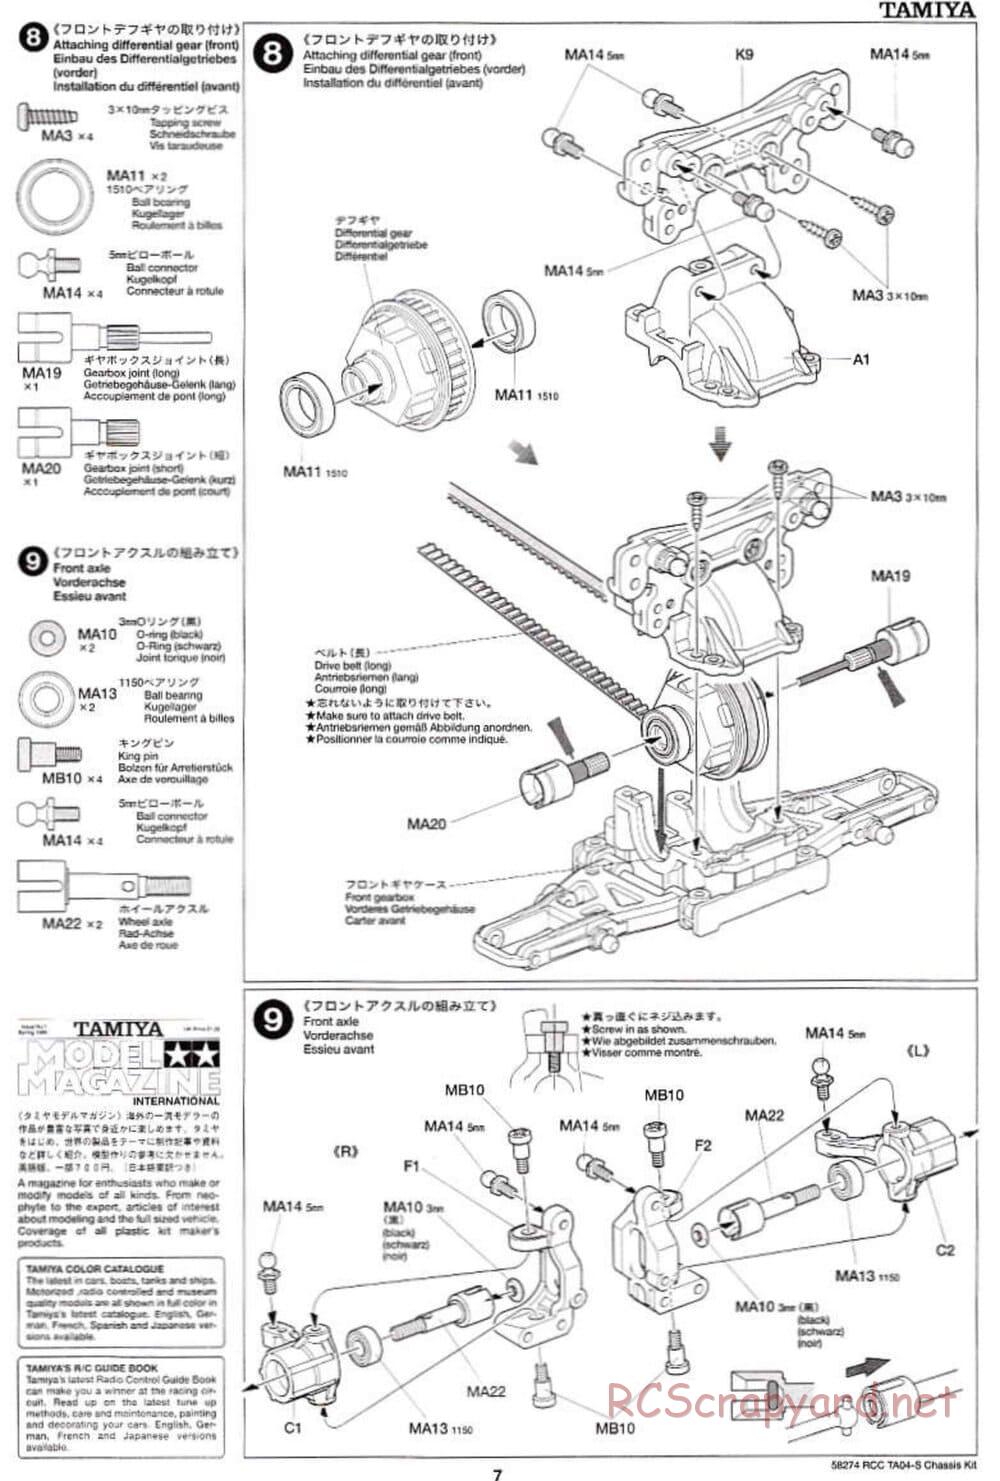 Tamiya - TA-04S Chassis - Manual - Page 7